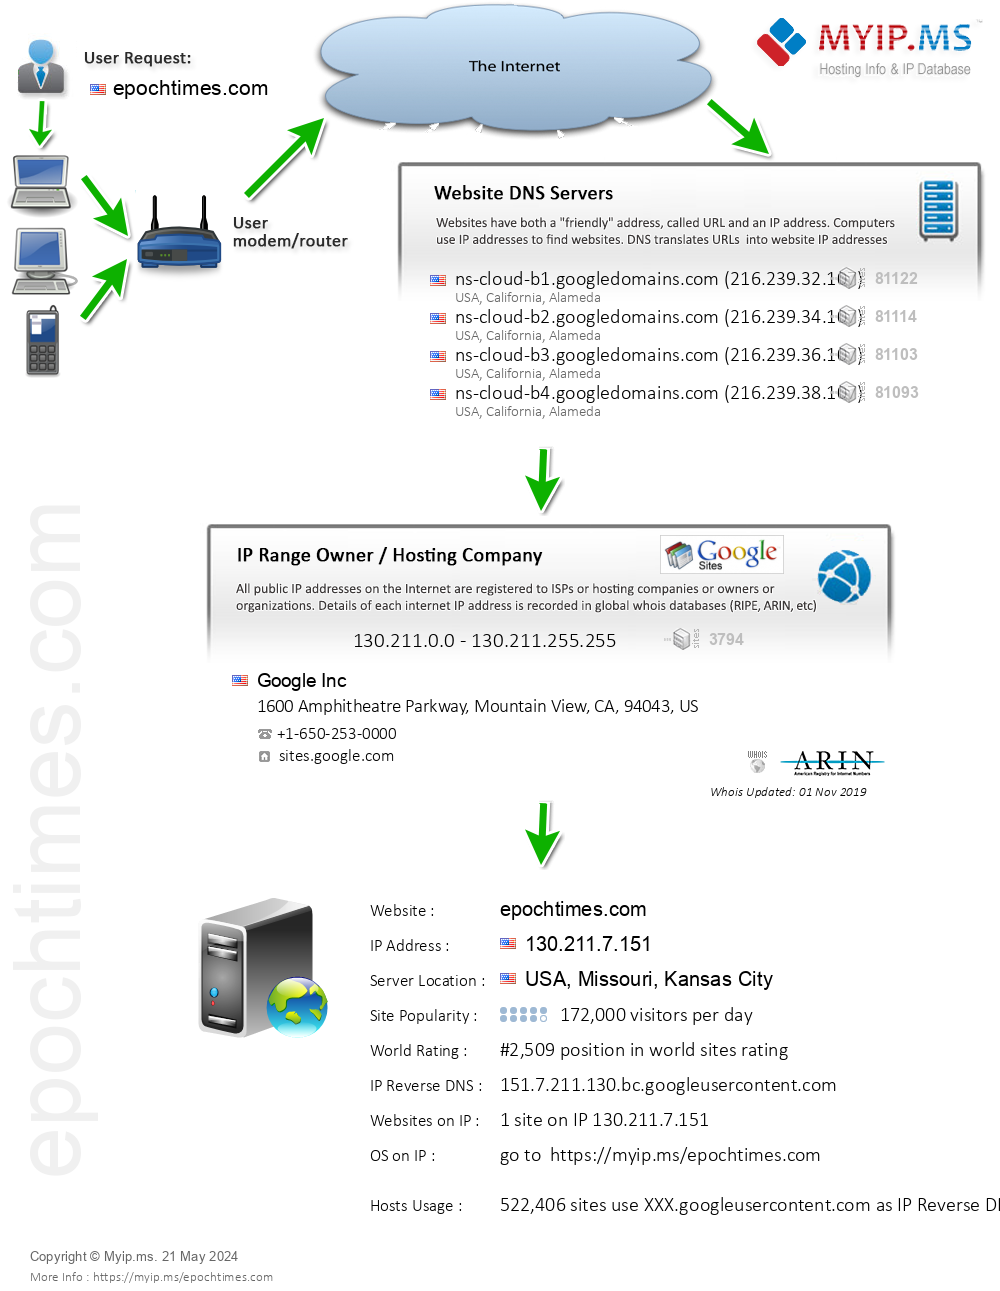 Epochtimes.com - Website Hosting Visual IP Diagram